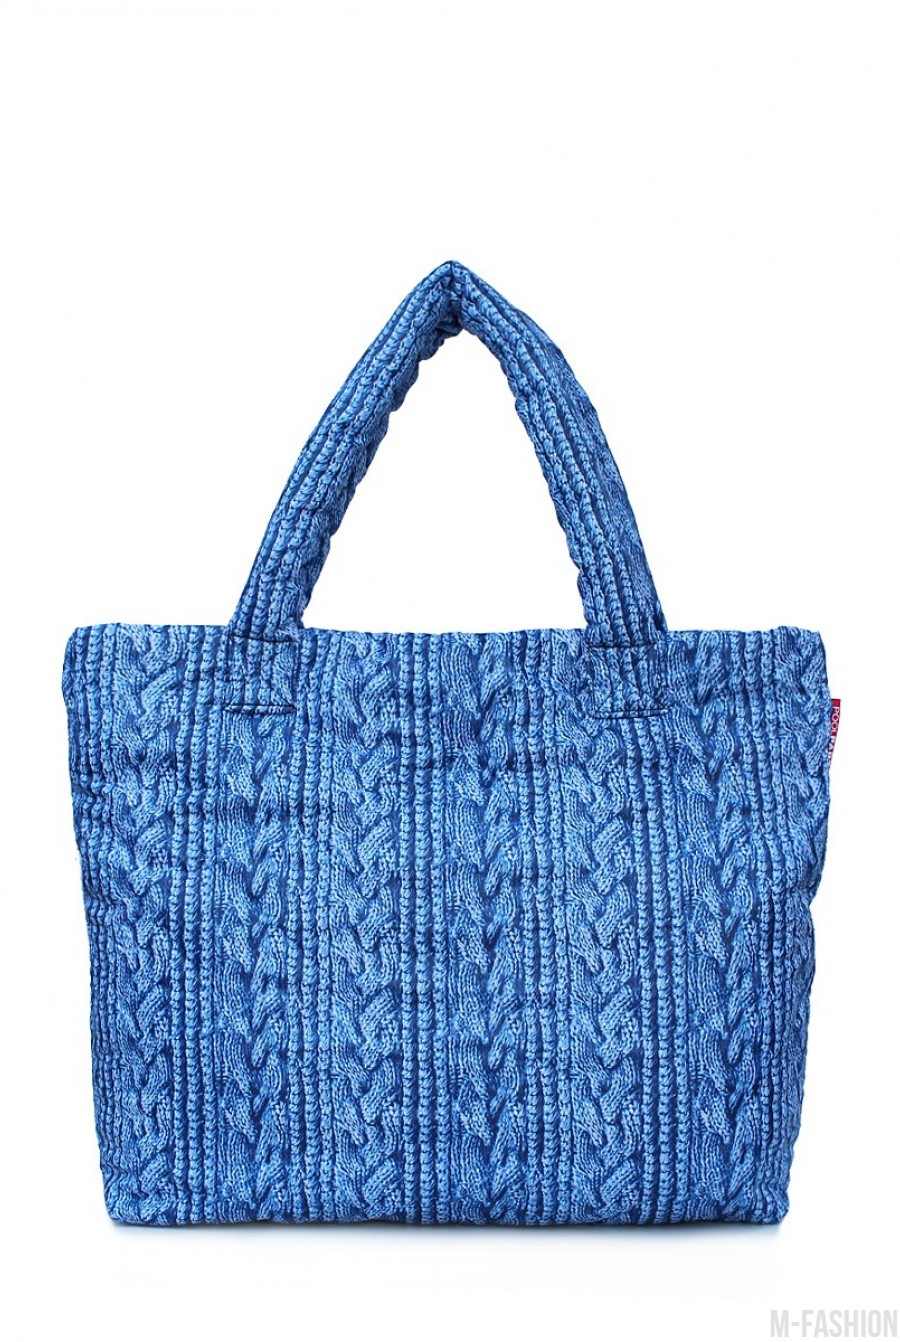 Дутая сумка с синей вязкой - Фото 1